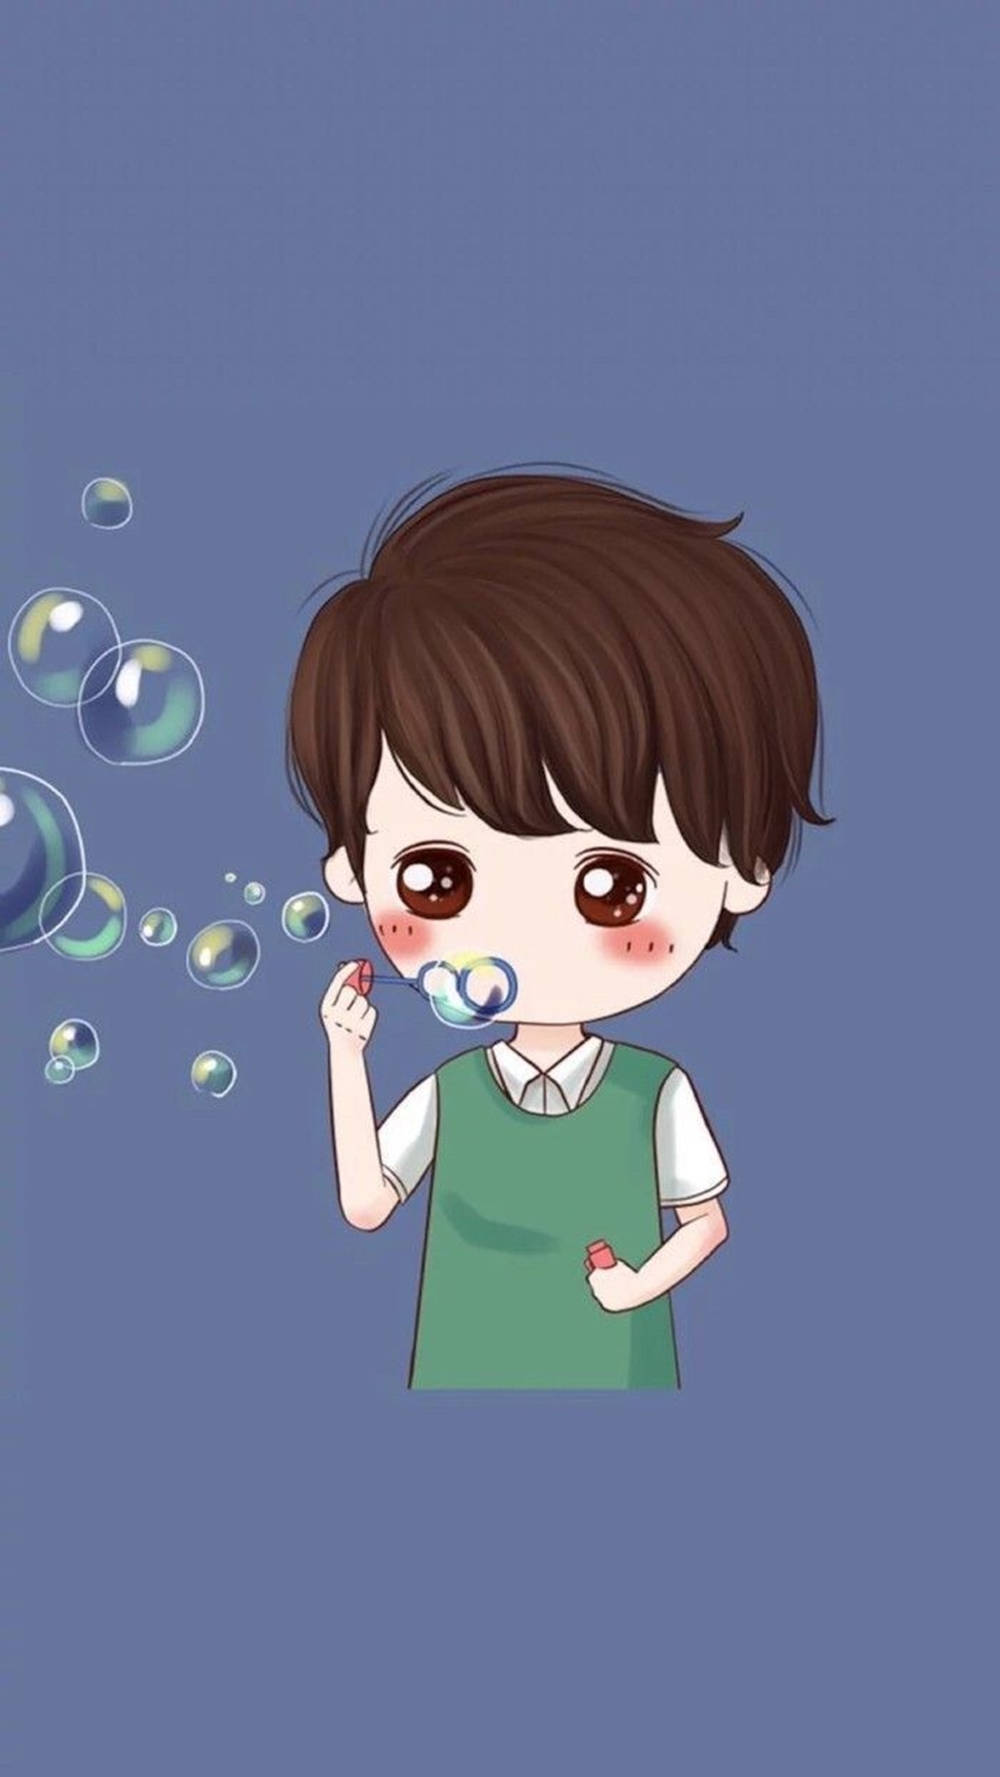 Cute Boy Cartoon Blowing Bubbles